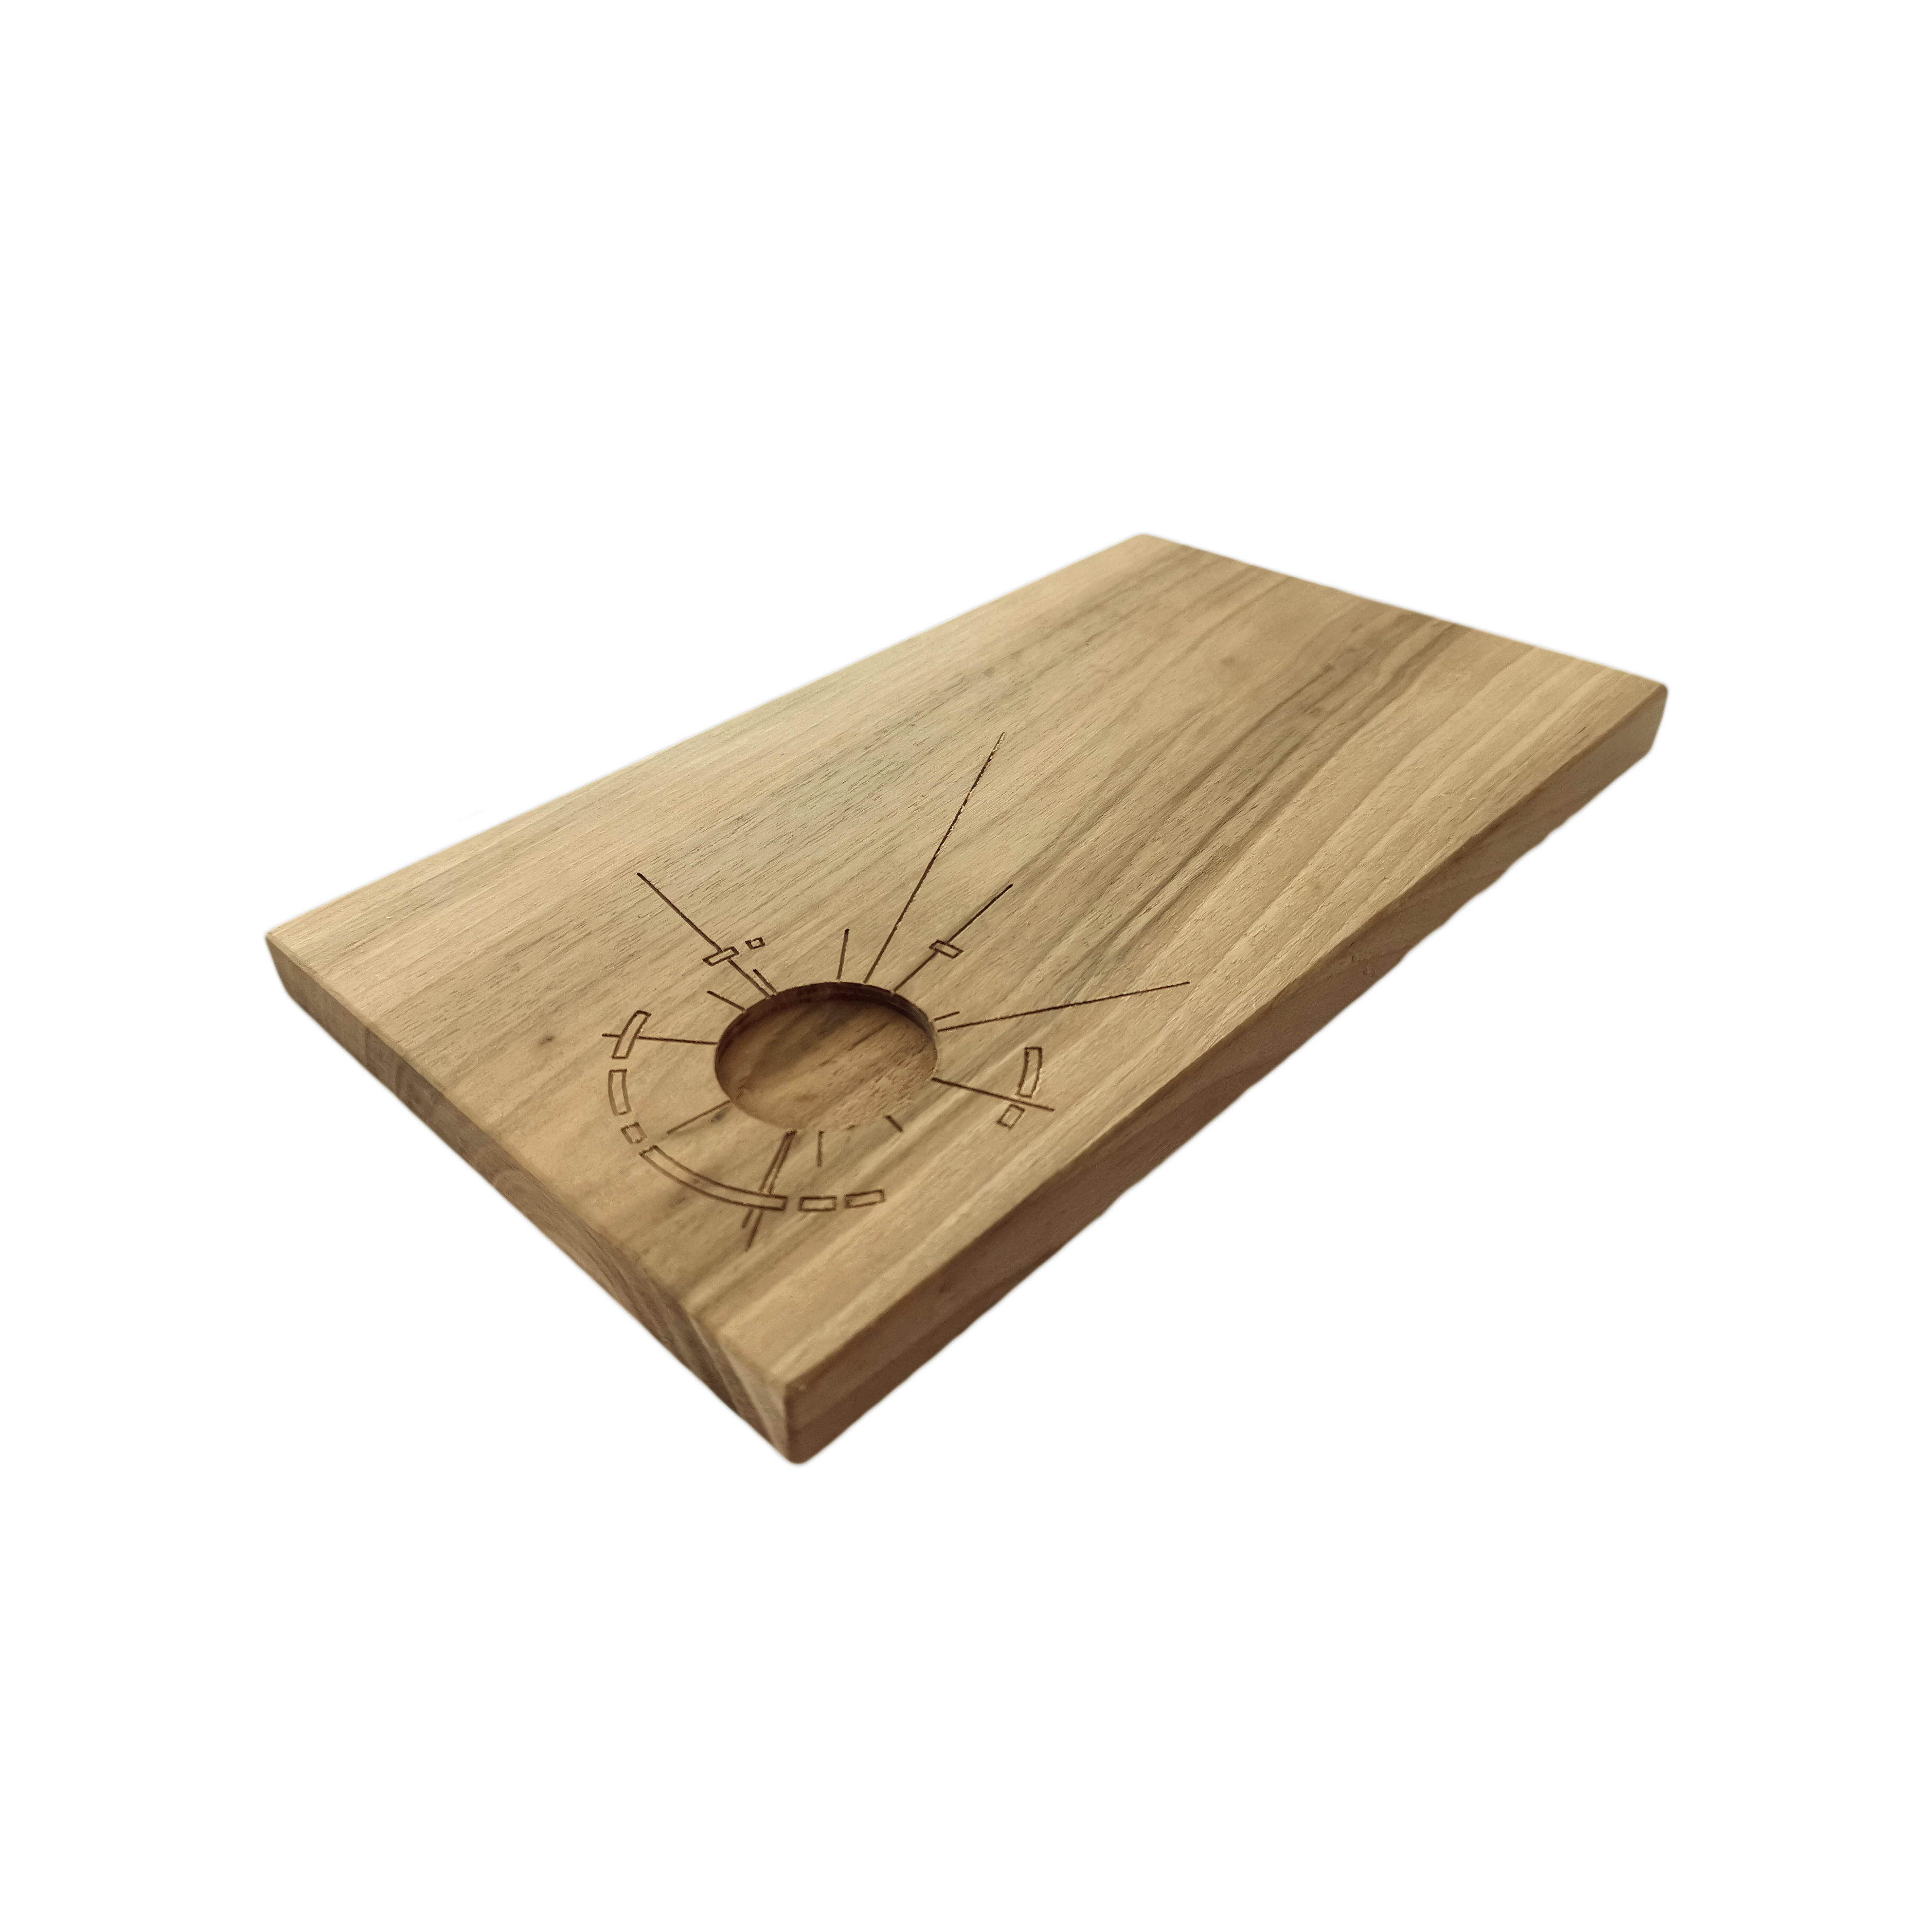 Tagliere con incavo in legno di castagno 24,5 x 13,5 x 1,5 cm